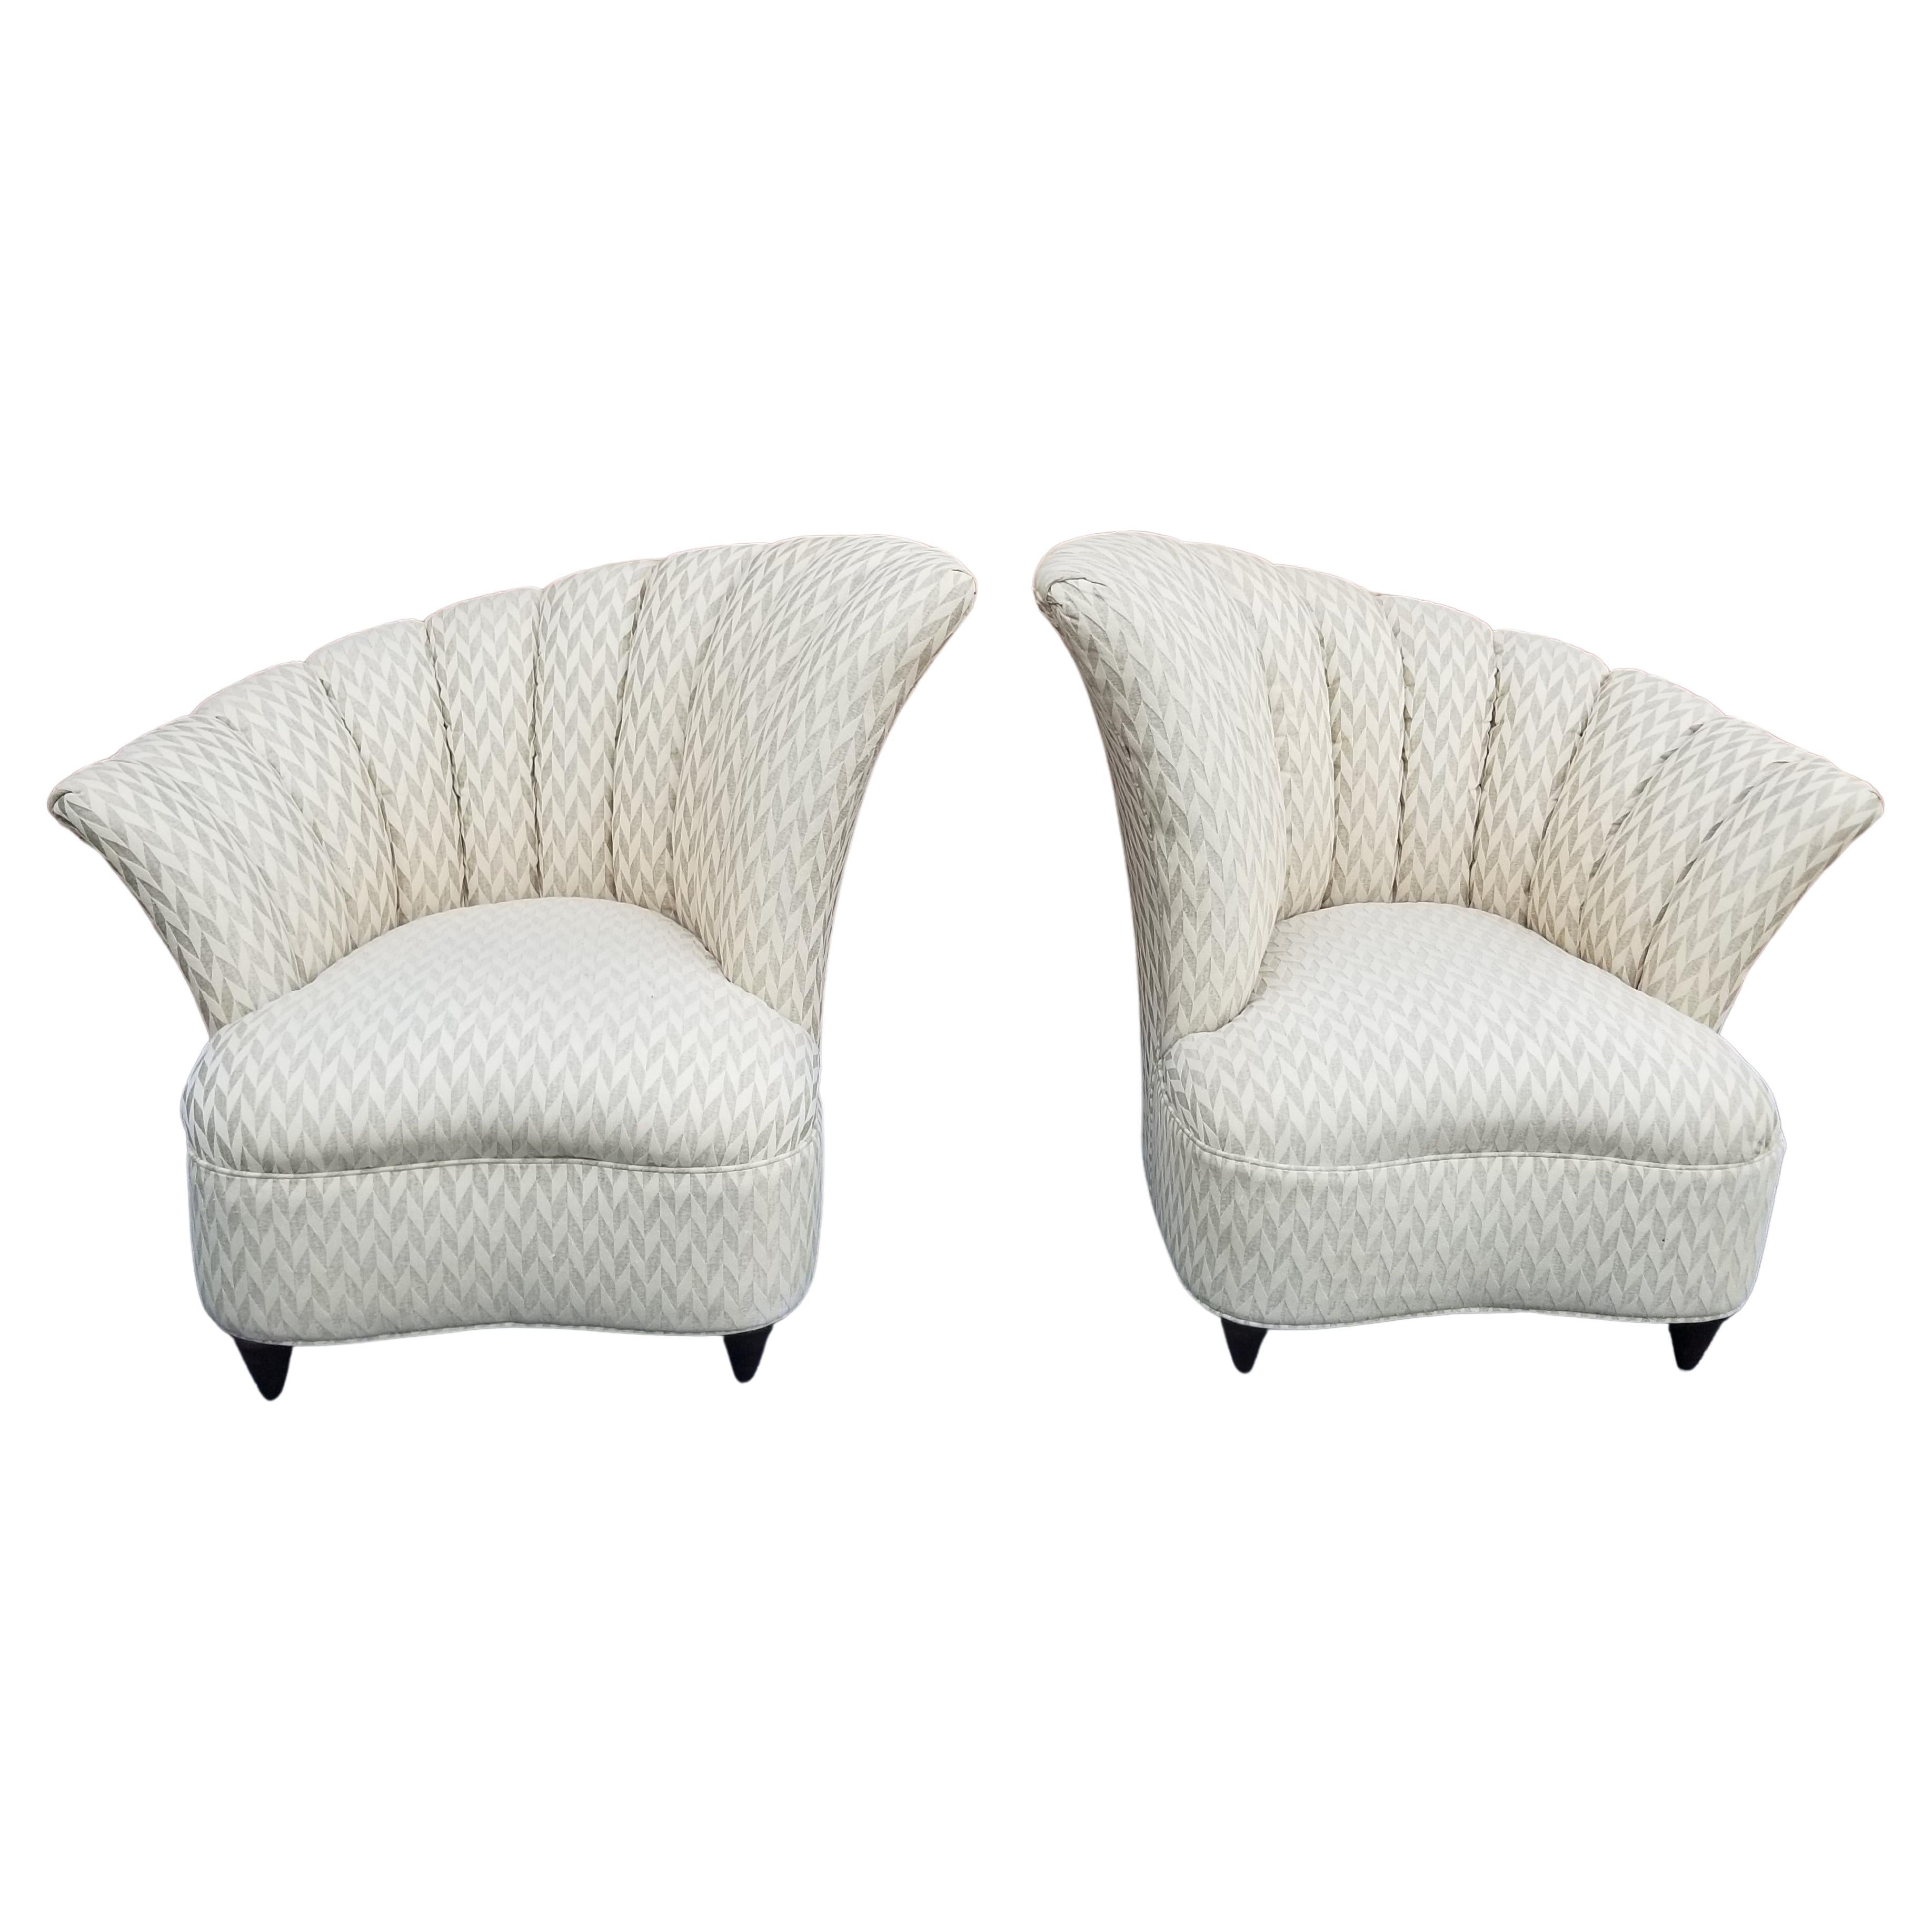 Art Deco Grosfeld House Channel / Fan Back Chairs For Sale